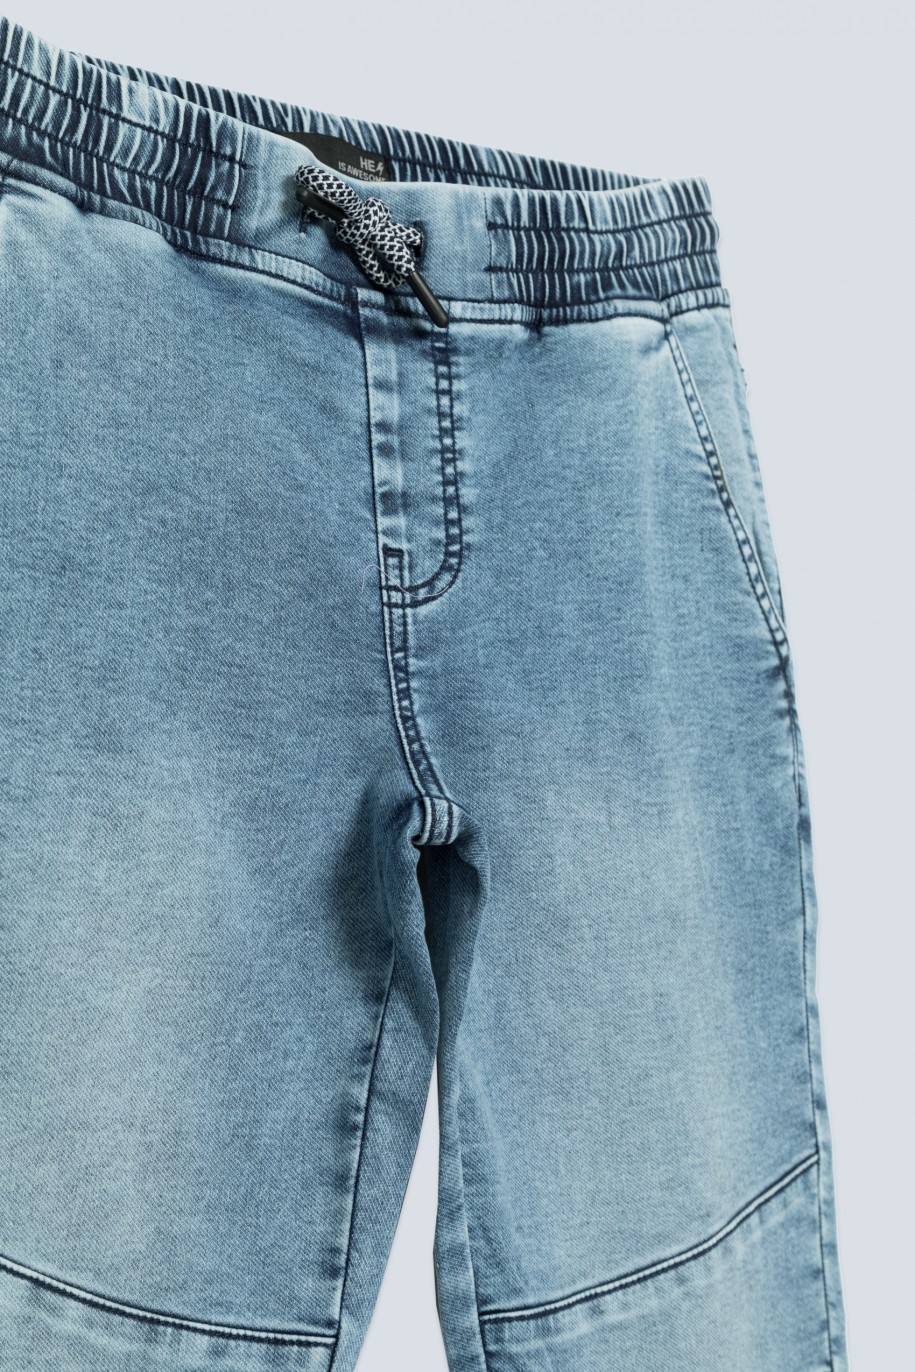 Niebieskie jeansy typu jogger ze ściągaczami dla chłopaka - 33582